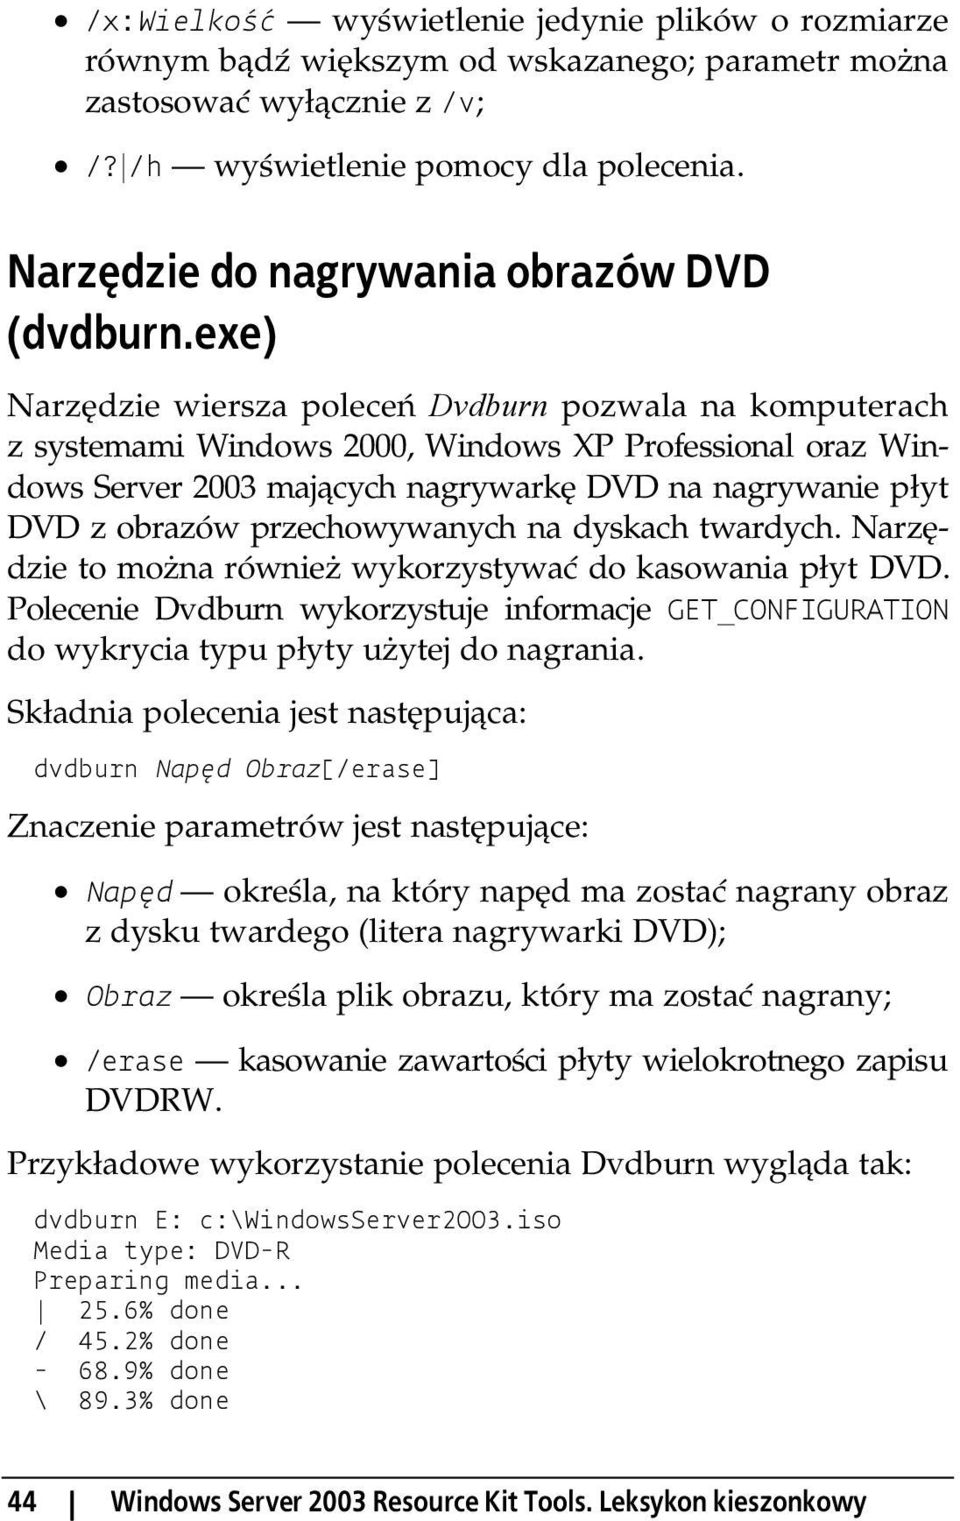 exe) Narzędzie wiersza poleceń Dvdburn pozwala na komputerach z systemami Windows 2000, Windows XP Professional oraz Windows Server 2003 mających nagrywarkę DVD na nagrywanie płyt DVD z obrazów